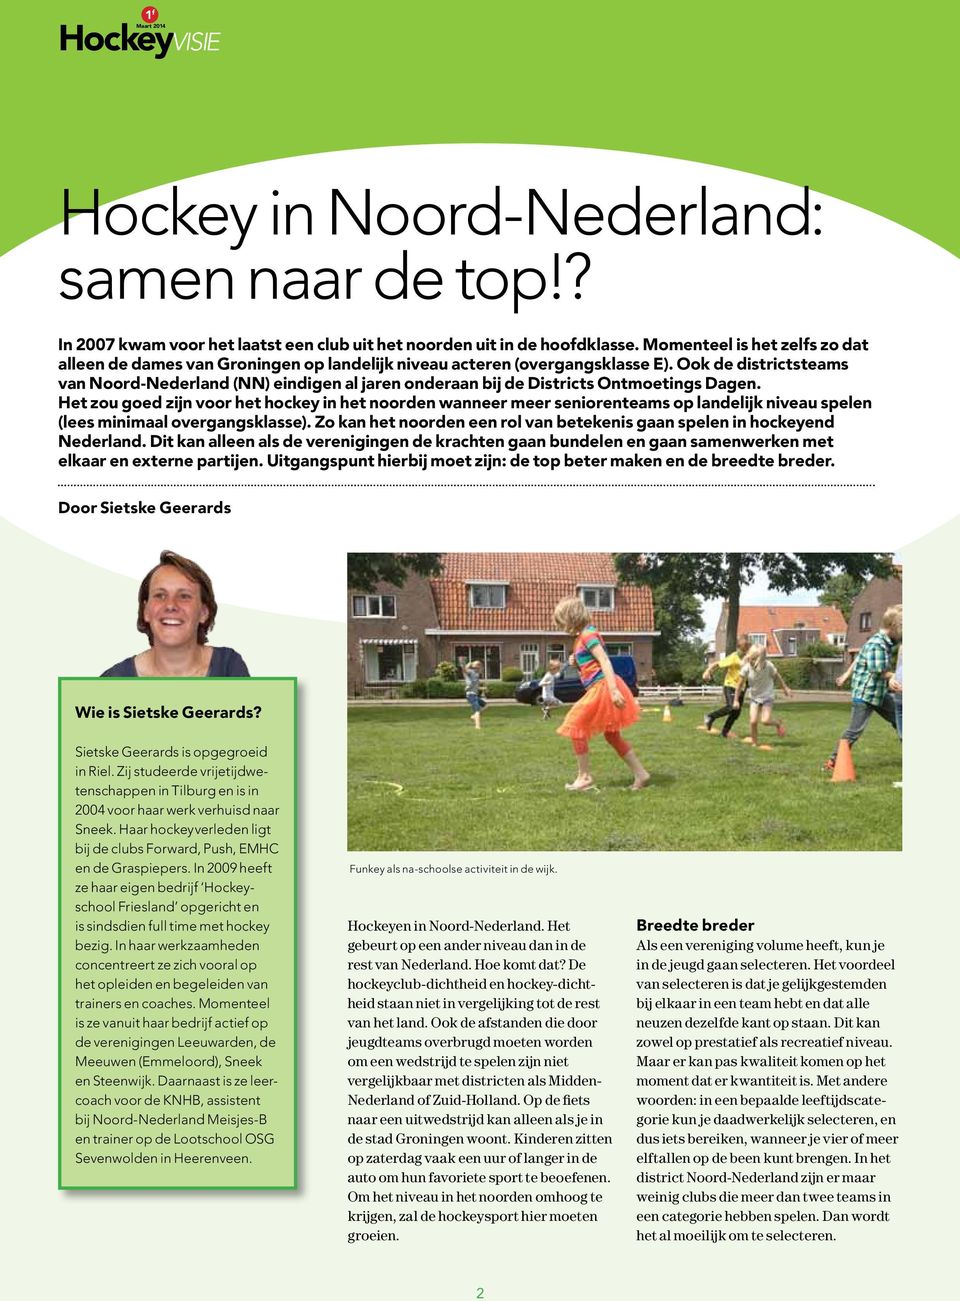 Ook de districtsteams van Noord-Nederland (NN) eindigen al jaren onderaan bij de Districts Ontmoetings Dagen.